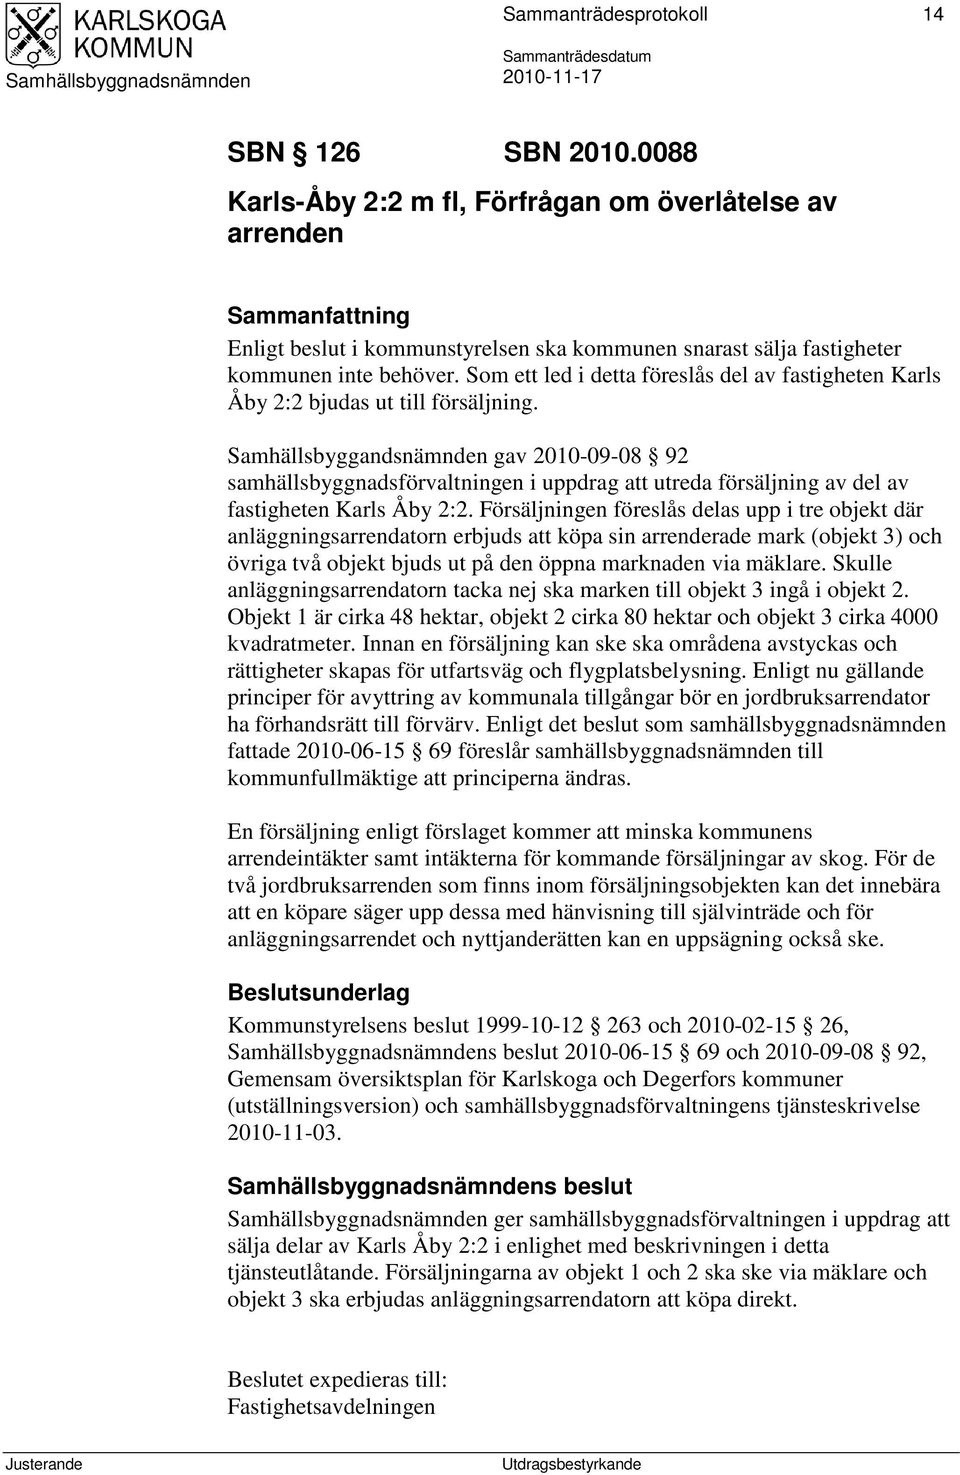 Samhällsbyggandsnämnden gav 2010-09-08 92 samhällsbyggnadsförvaltningen i uppdrag att utreda försäljning av del av fastigheten Karls Åby 2:2.